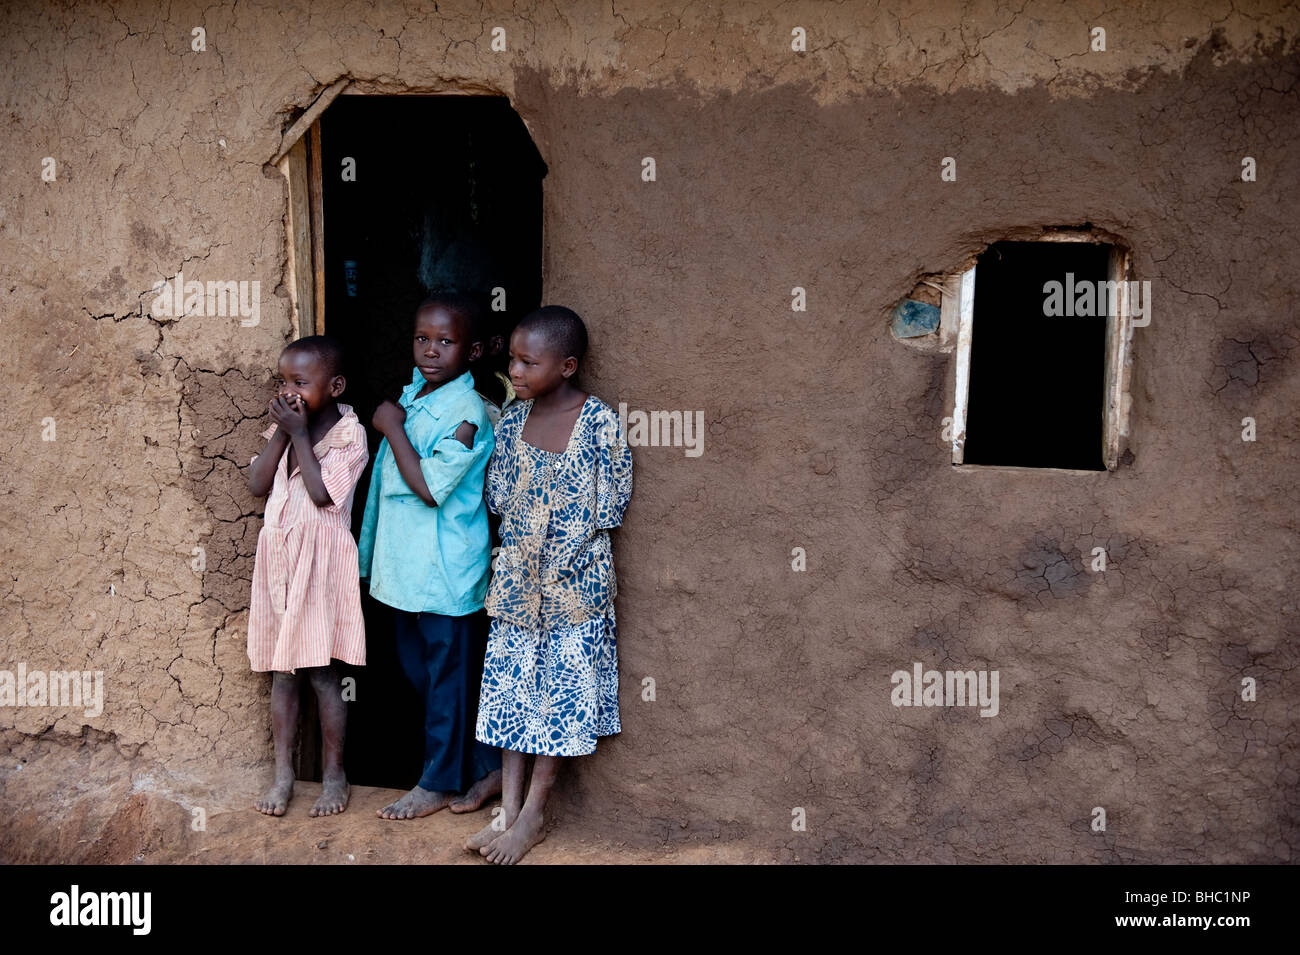 Trois enfants à l'extérieur des homestead en Afrique Ouganda Hoima Banque D'Images